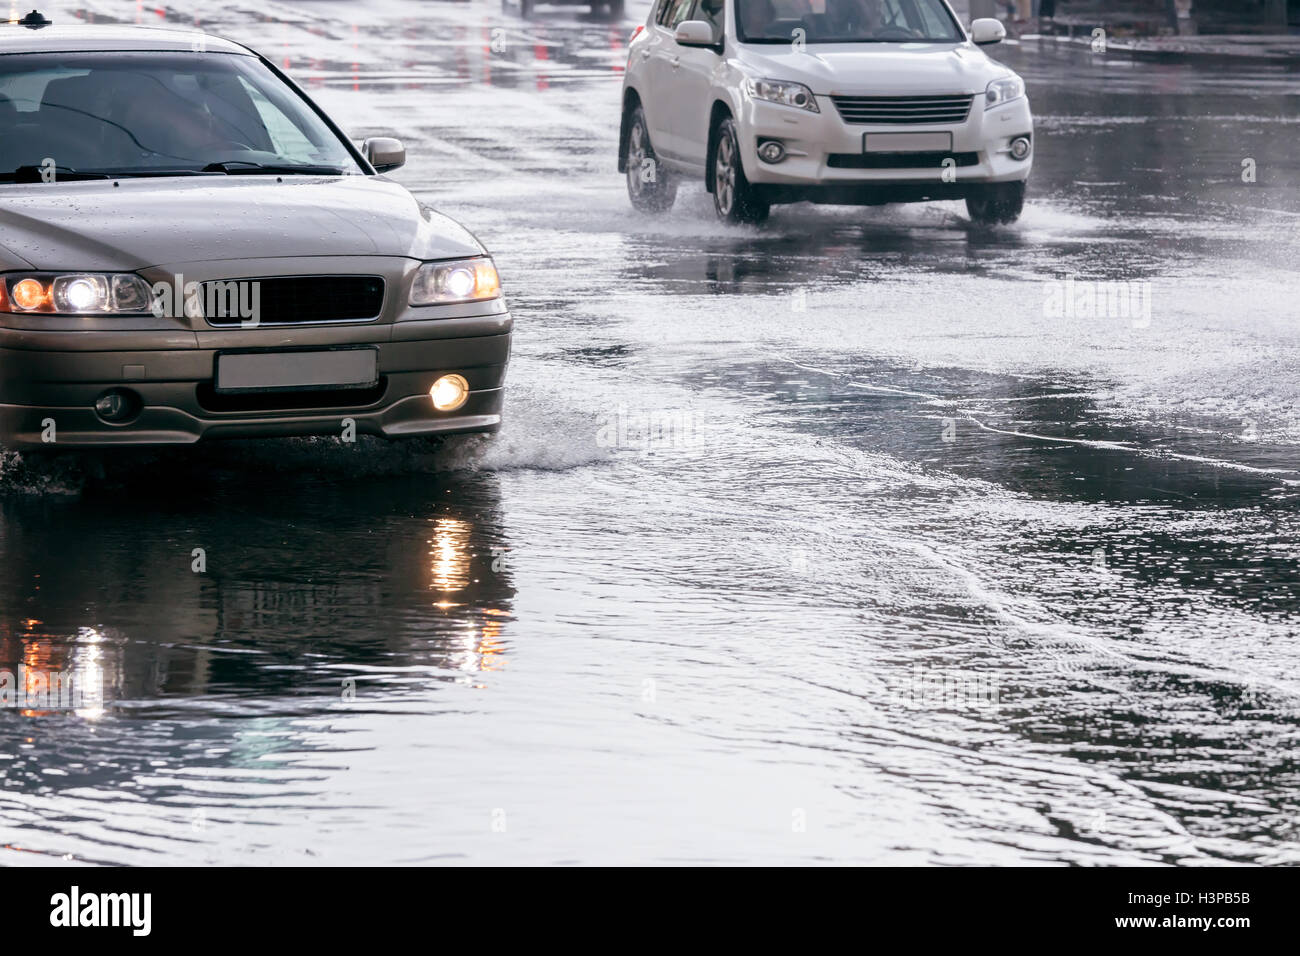 Ciudad camino inundado con agua de lluvia. Automóviles circulando en charcos de agua después del aguacero. Foto de stock